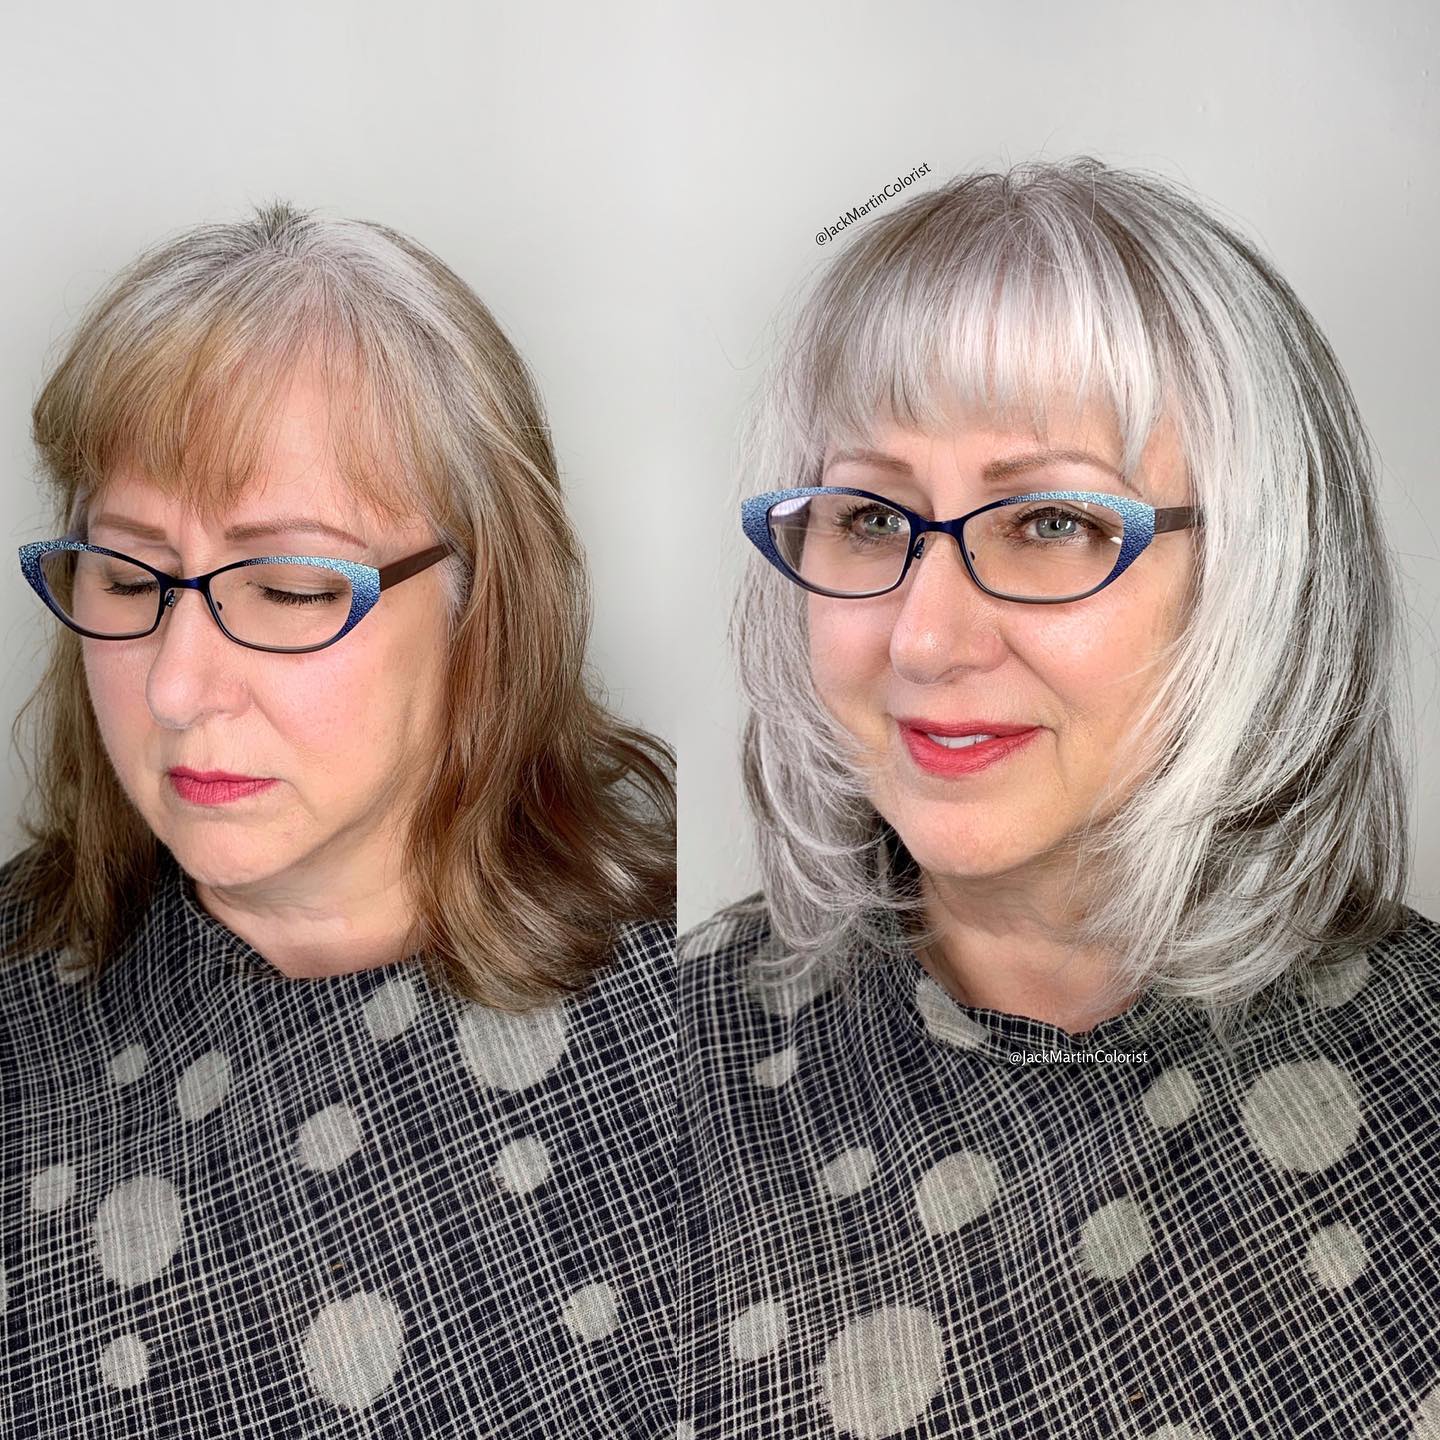 Staircase cut for gray hair: 12 elegant, modern ideas